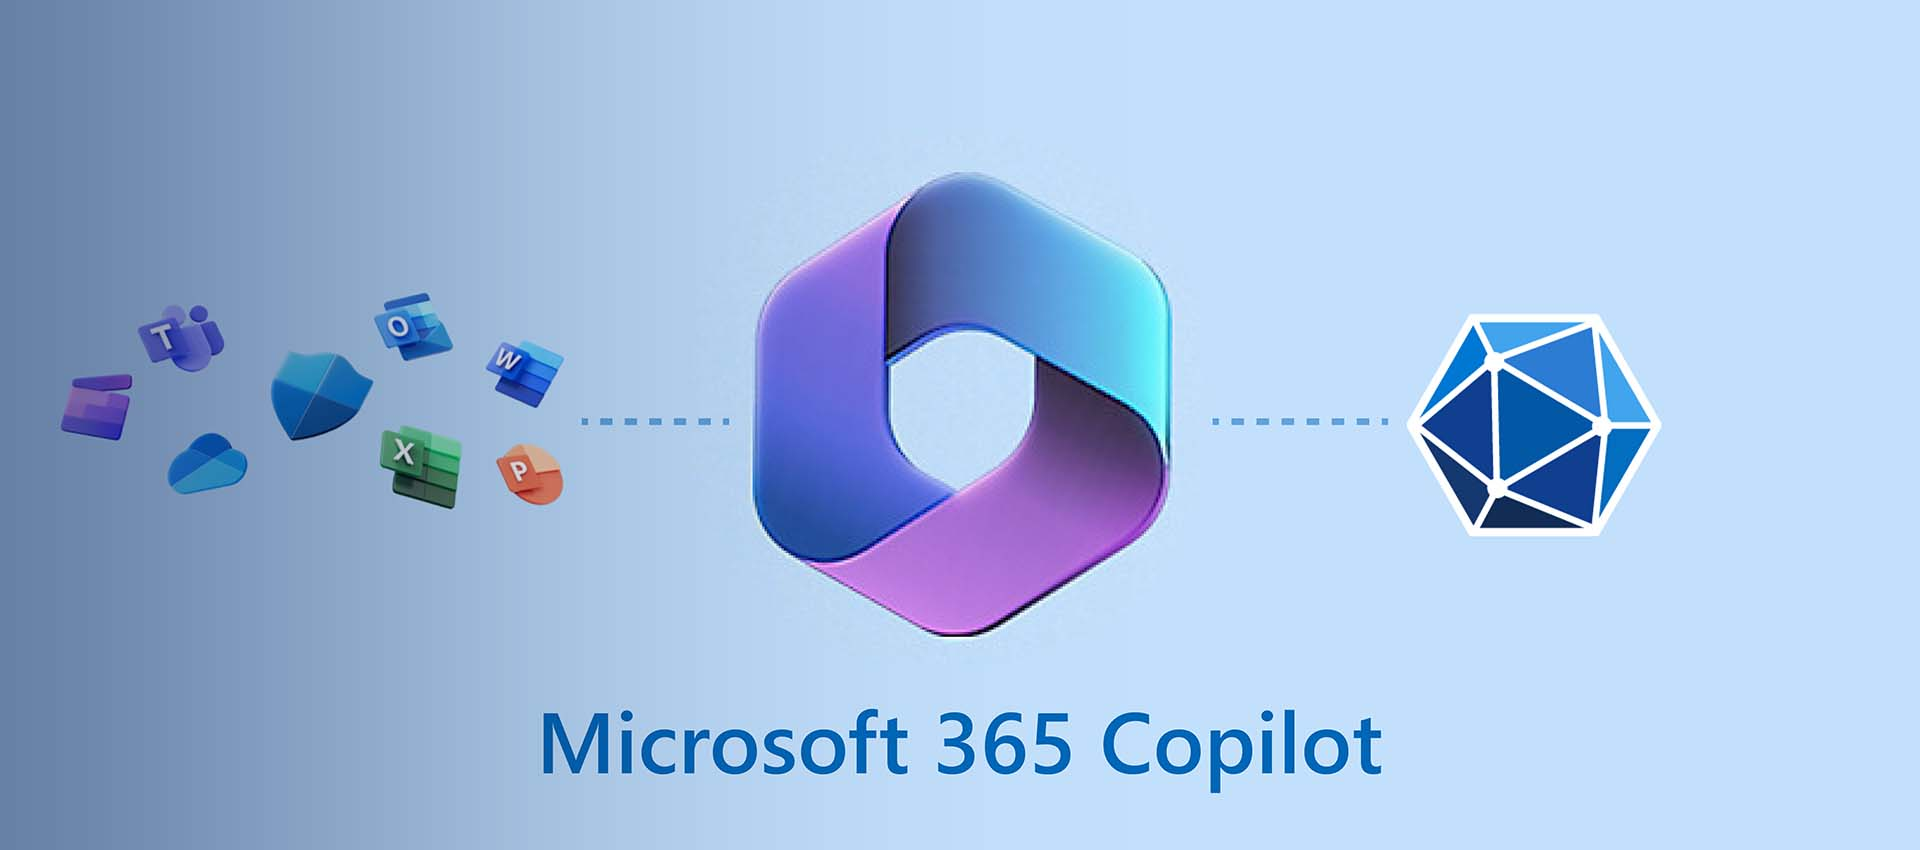 Microsoft 365 copilot is the future